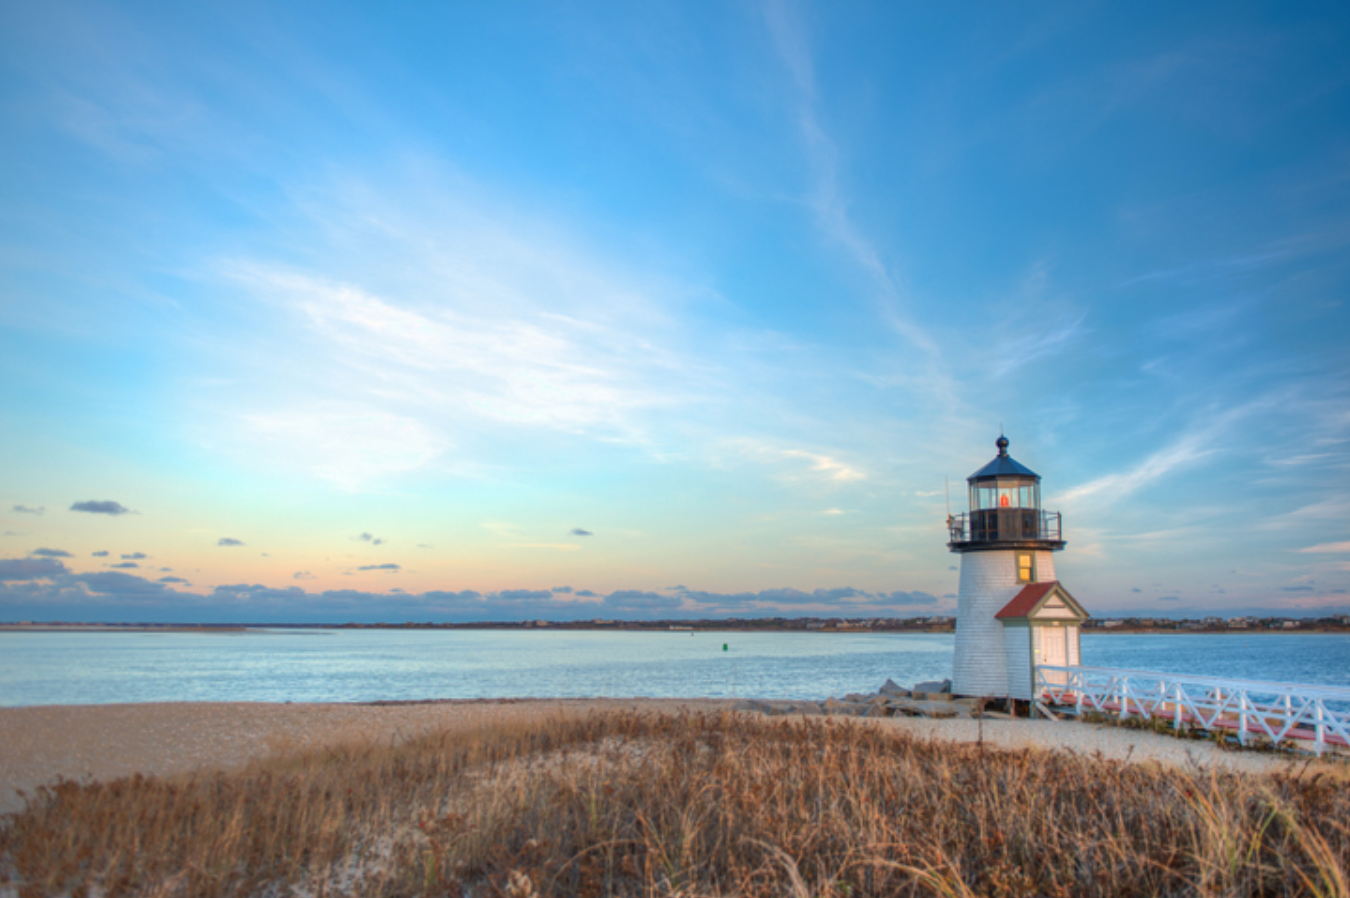 Brant Point Lighthouse during sunset in Nantucket, Massachusetts.